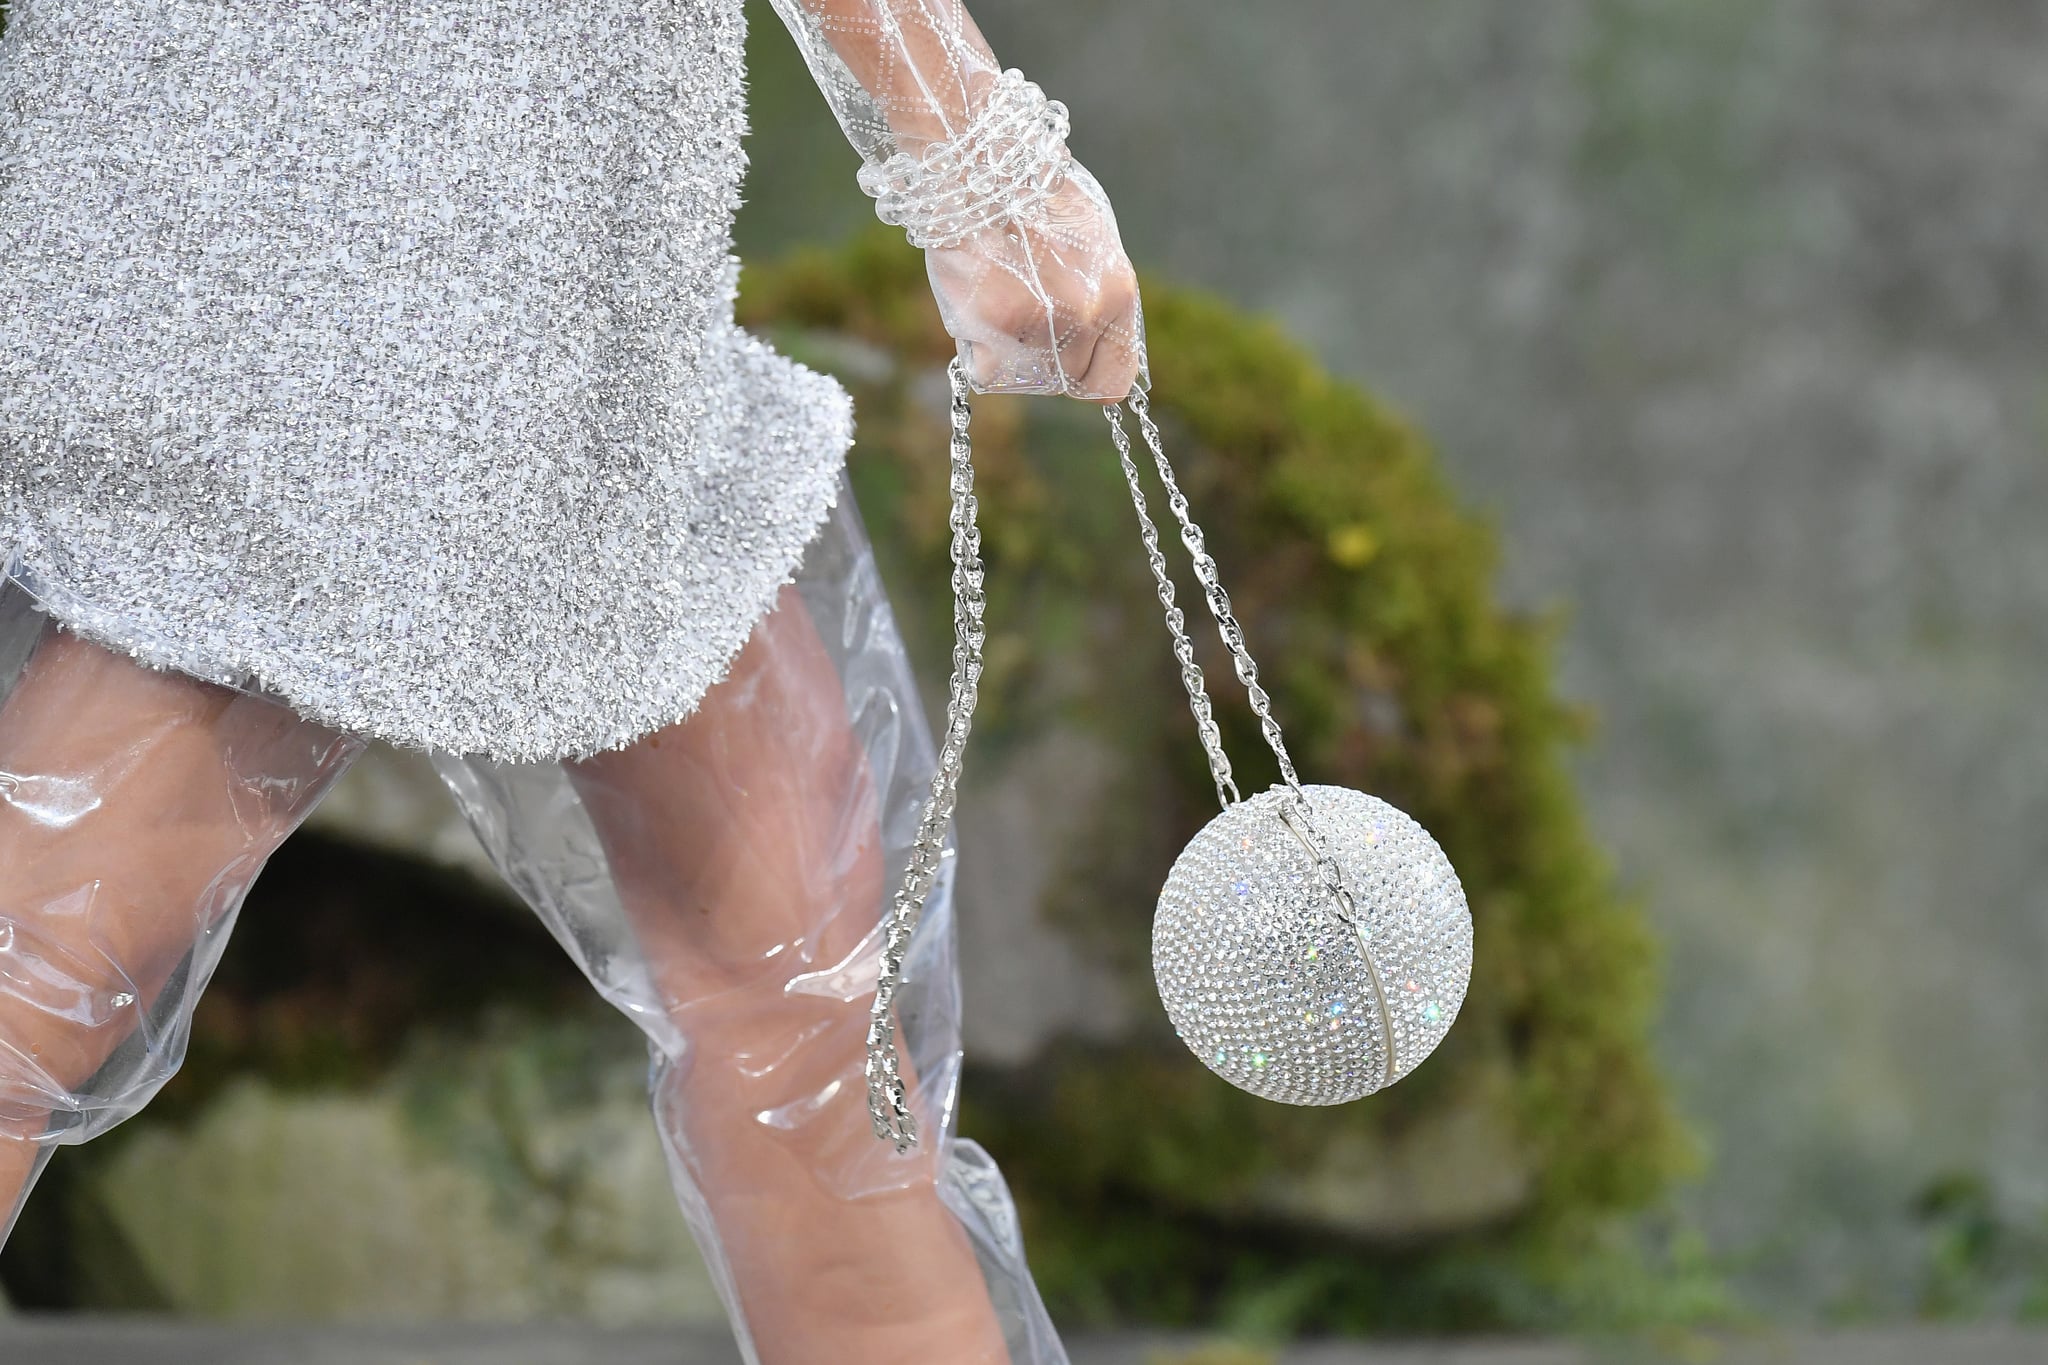 silver disco ball purse